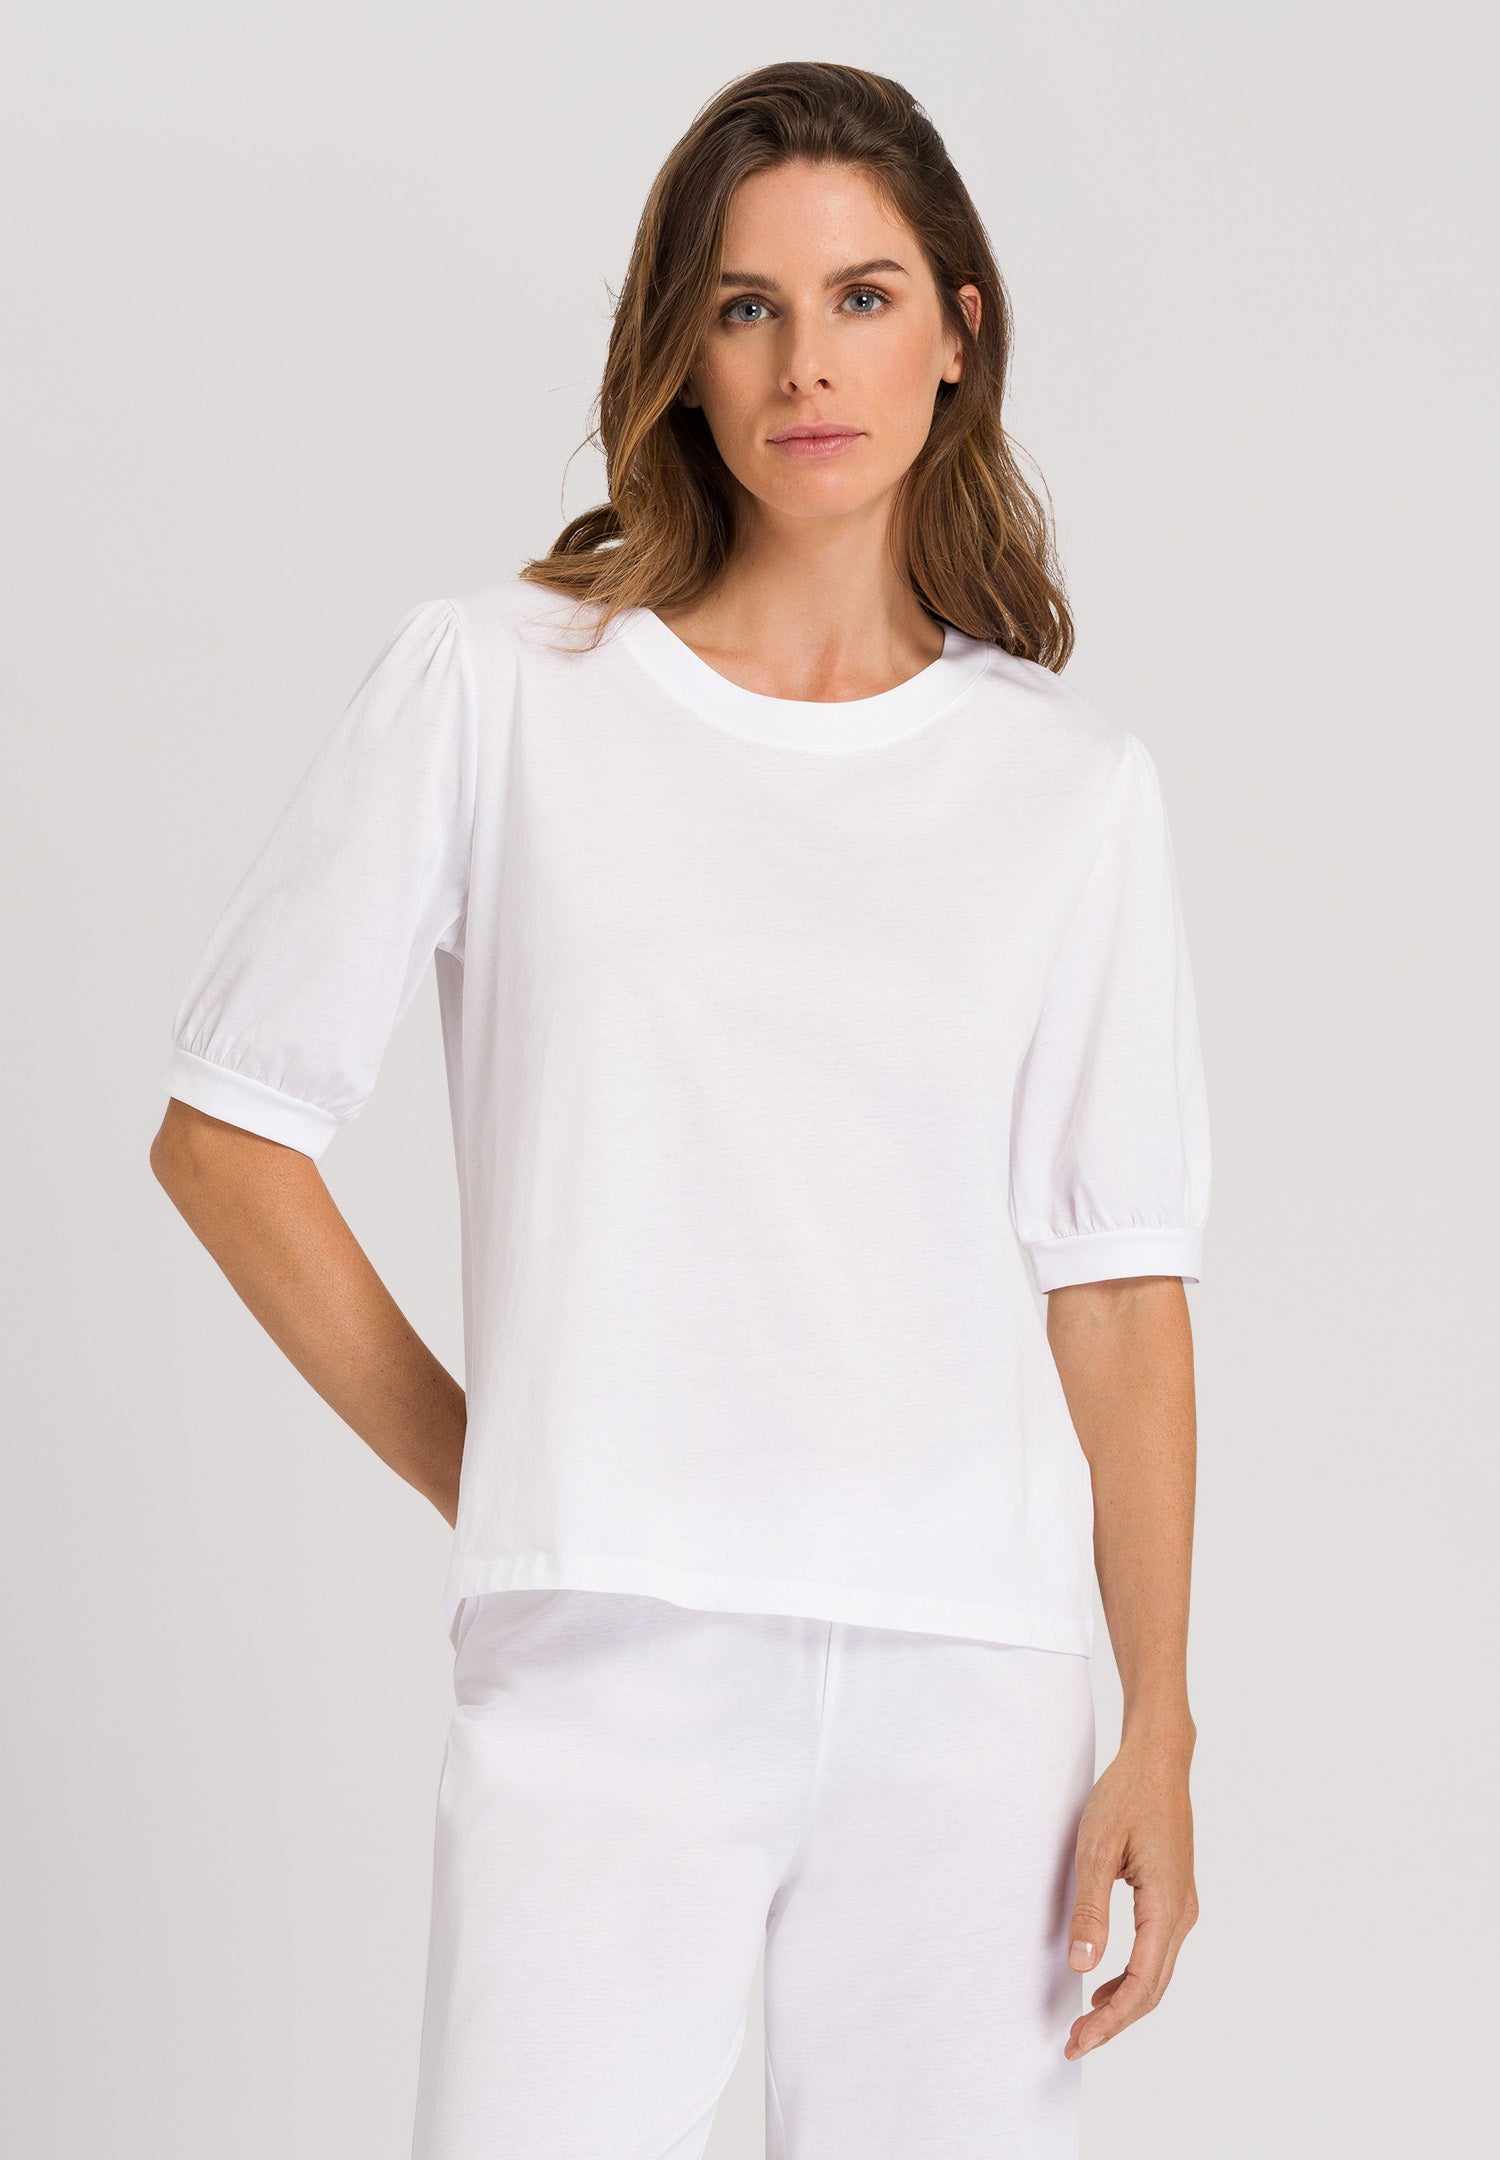 78741 Natural Shirt Short Sleeve Shirt - 101 White